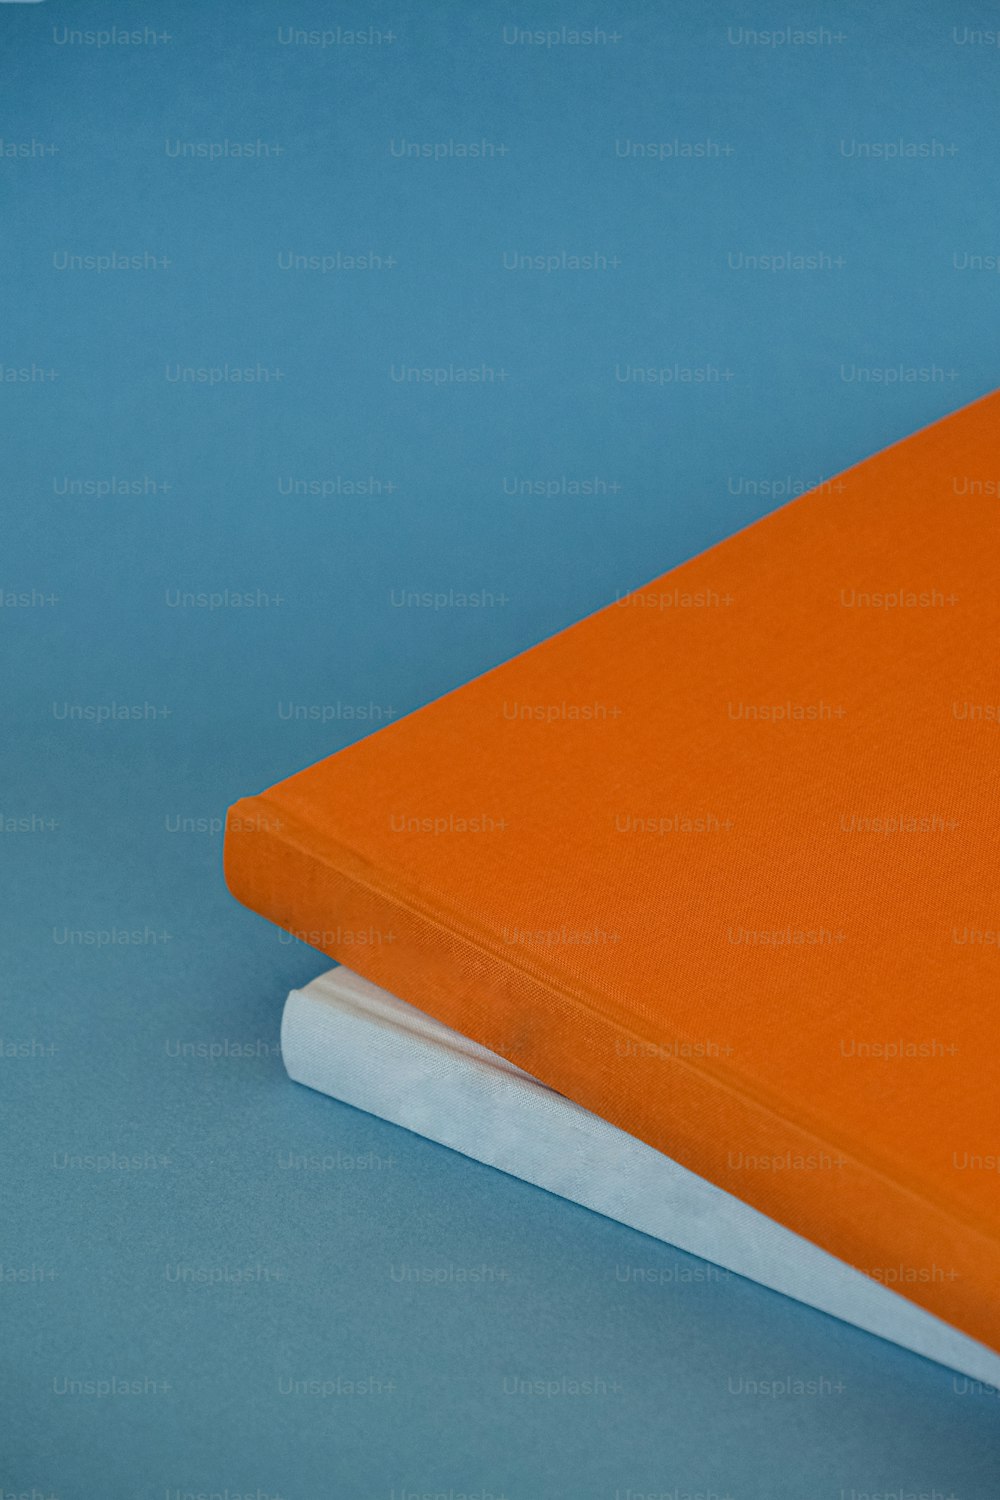 Un cahier orange posé sur un livre blanc